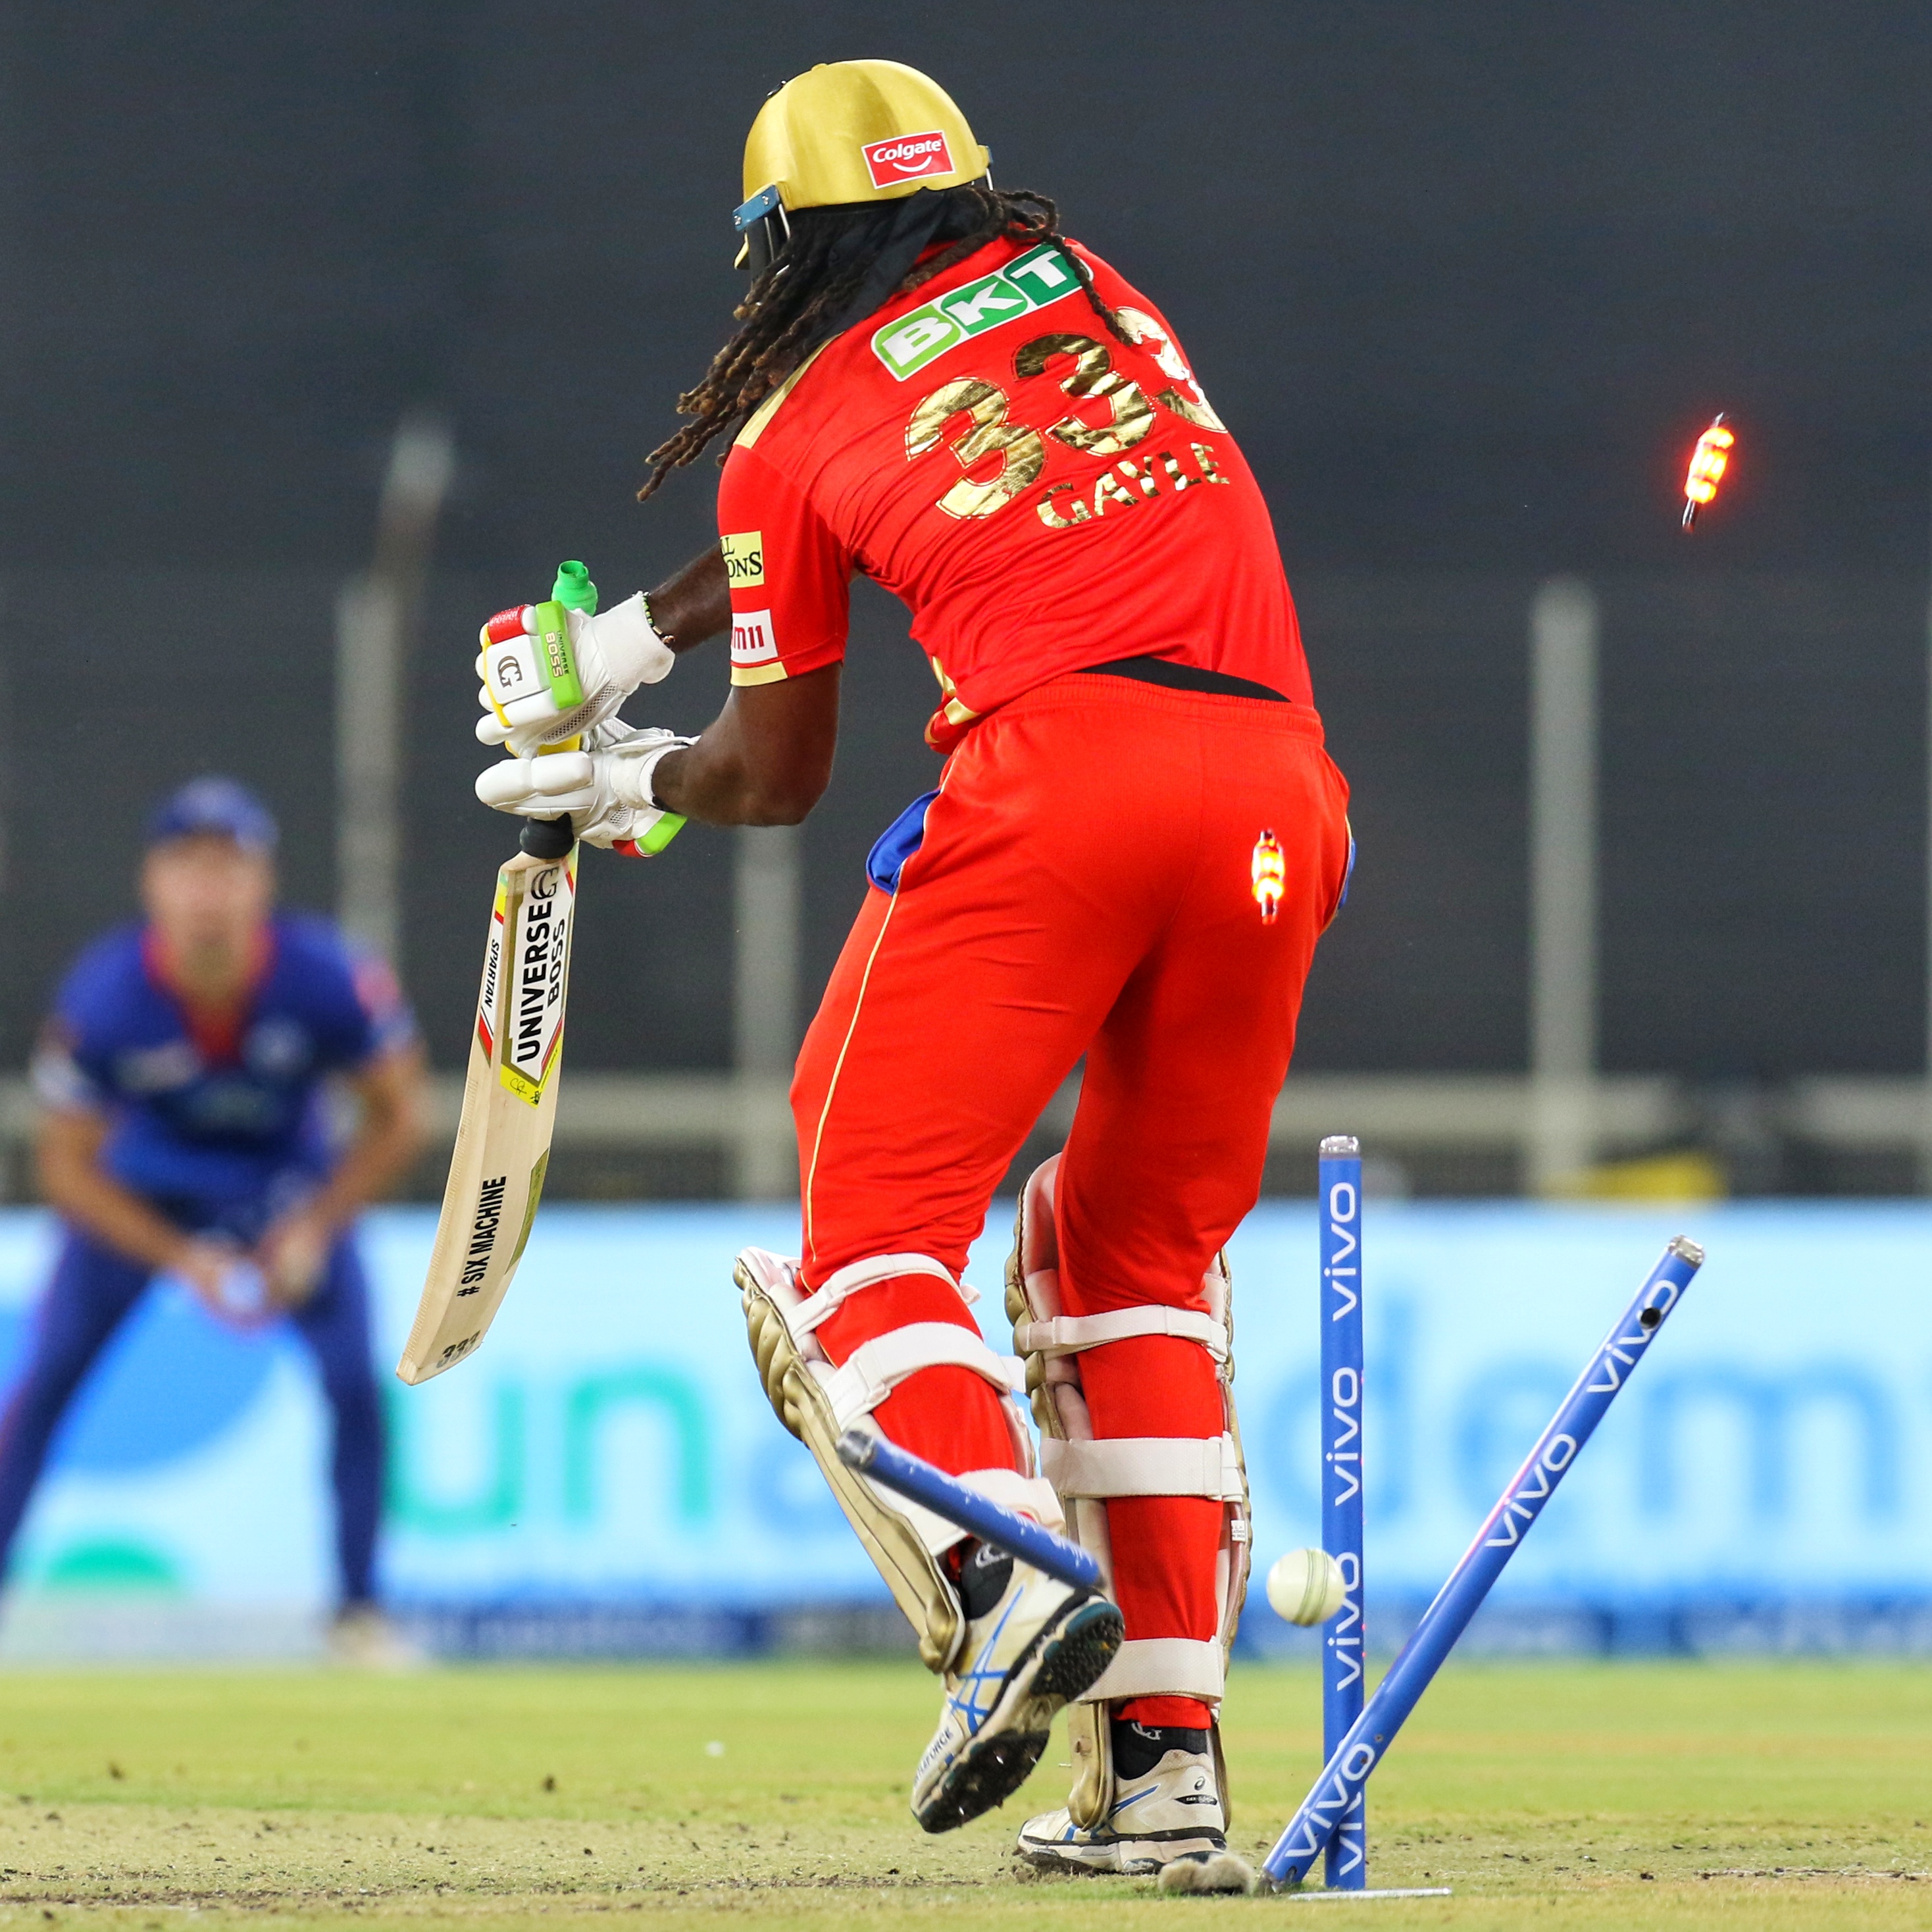 IPL 2021: Rabada’s full-toss sends Chris Gayle stumps flying